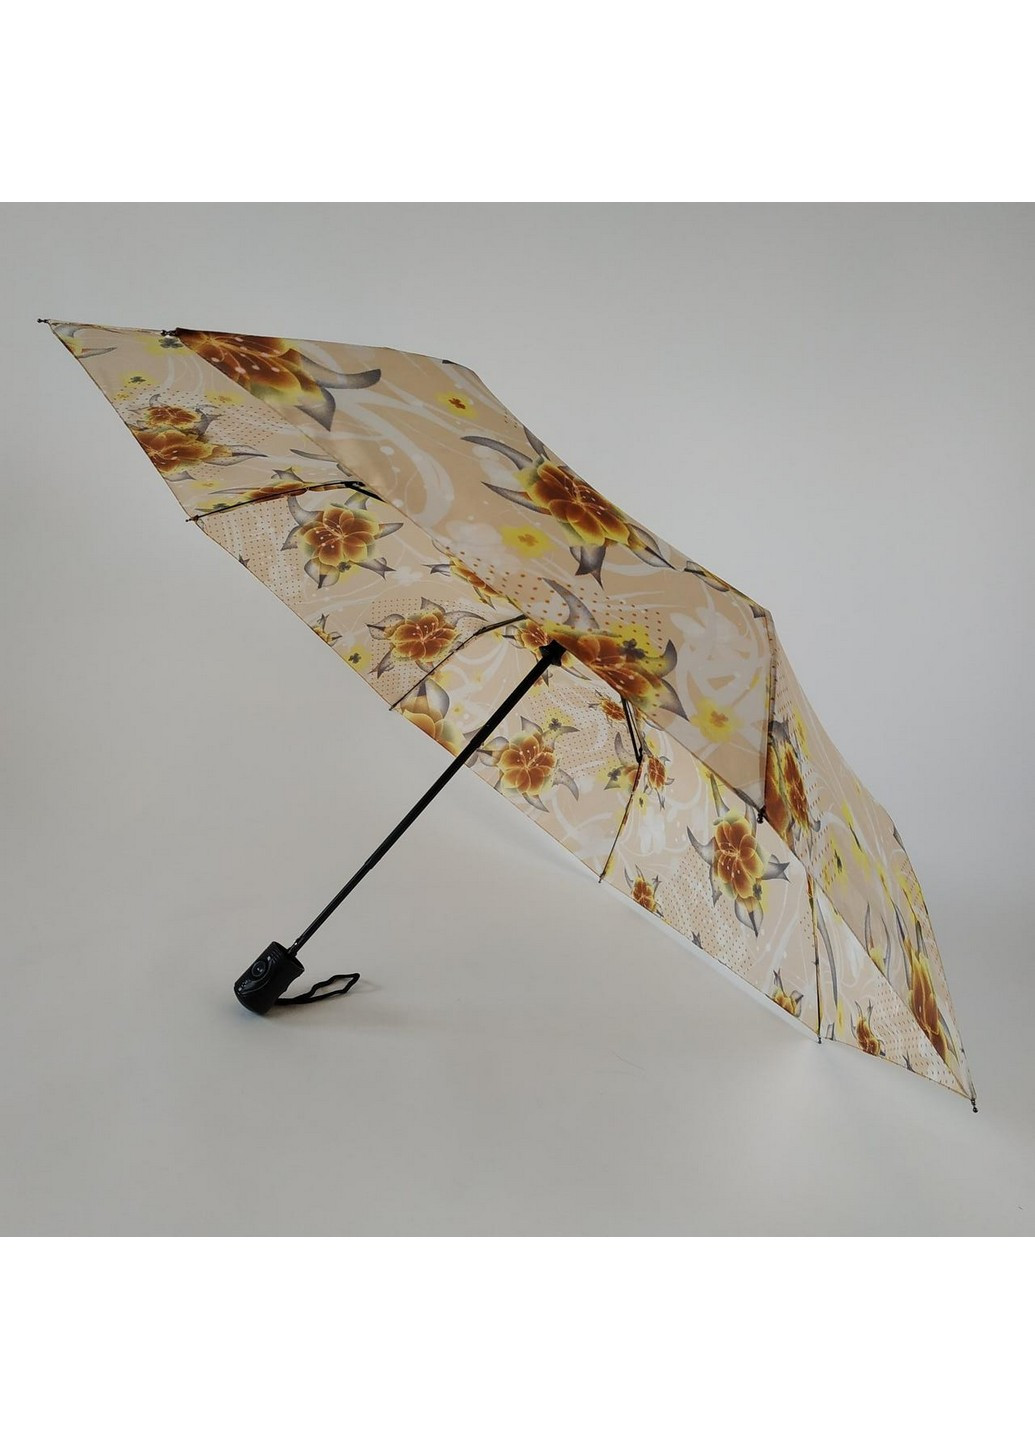 Женский зонт полуавтомат (310) 101 см Lima (206211723)